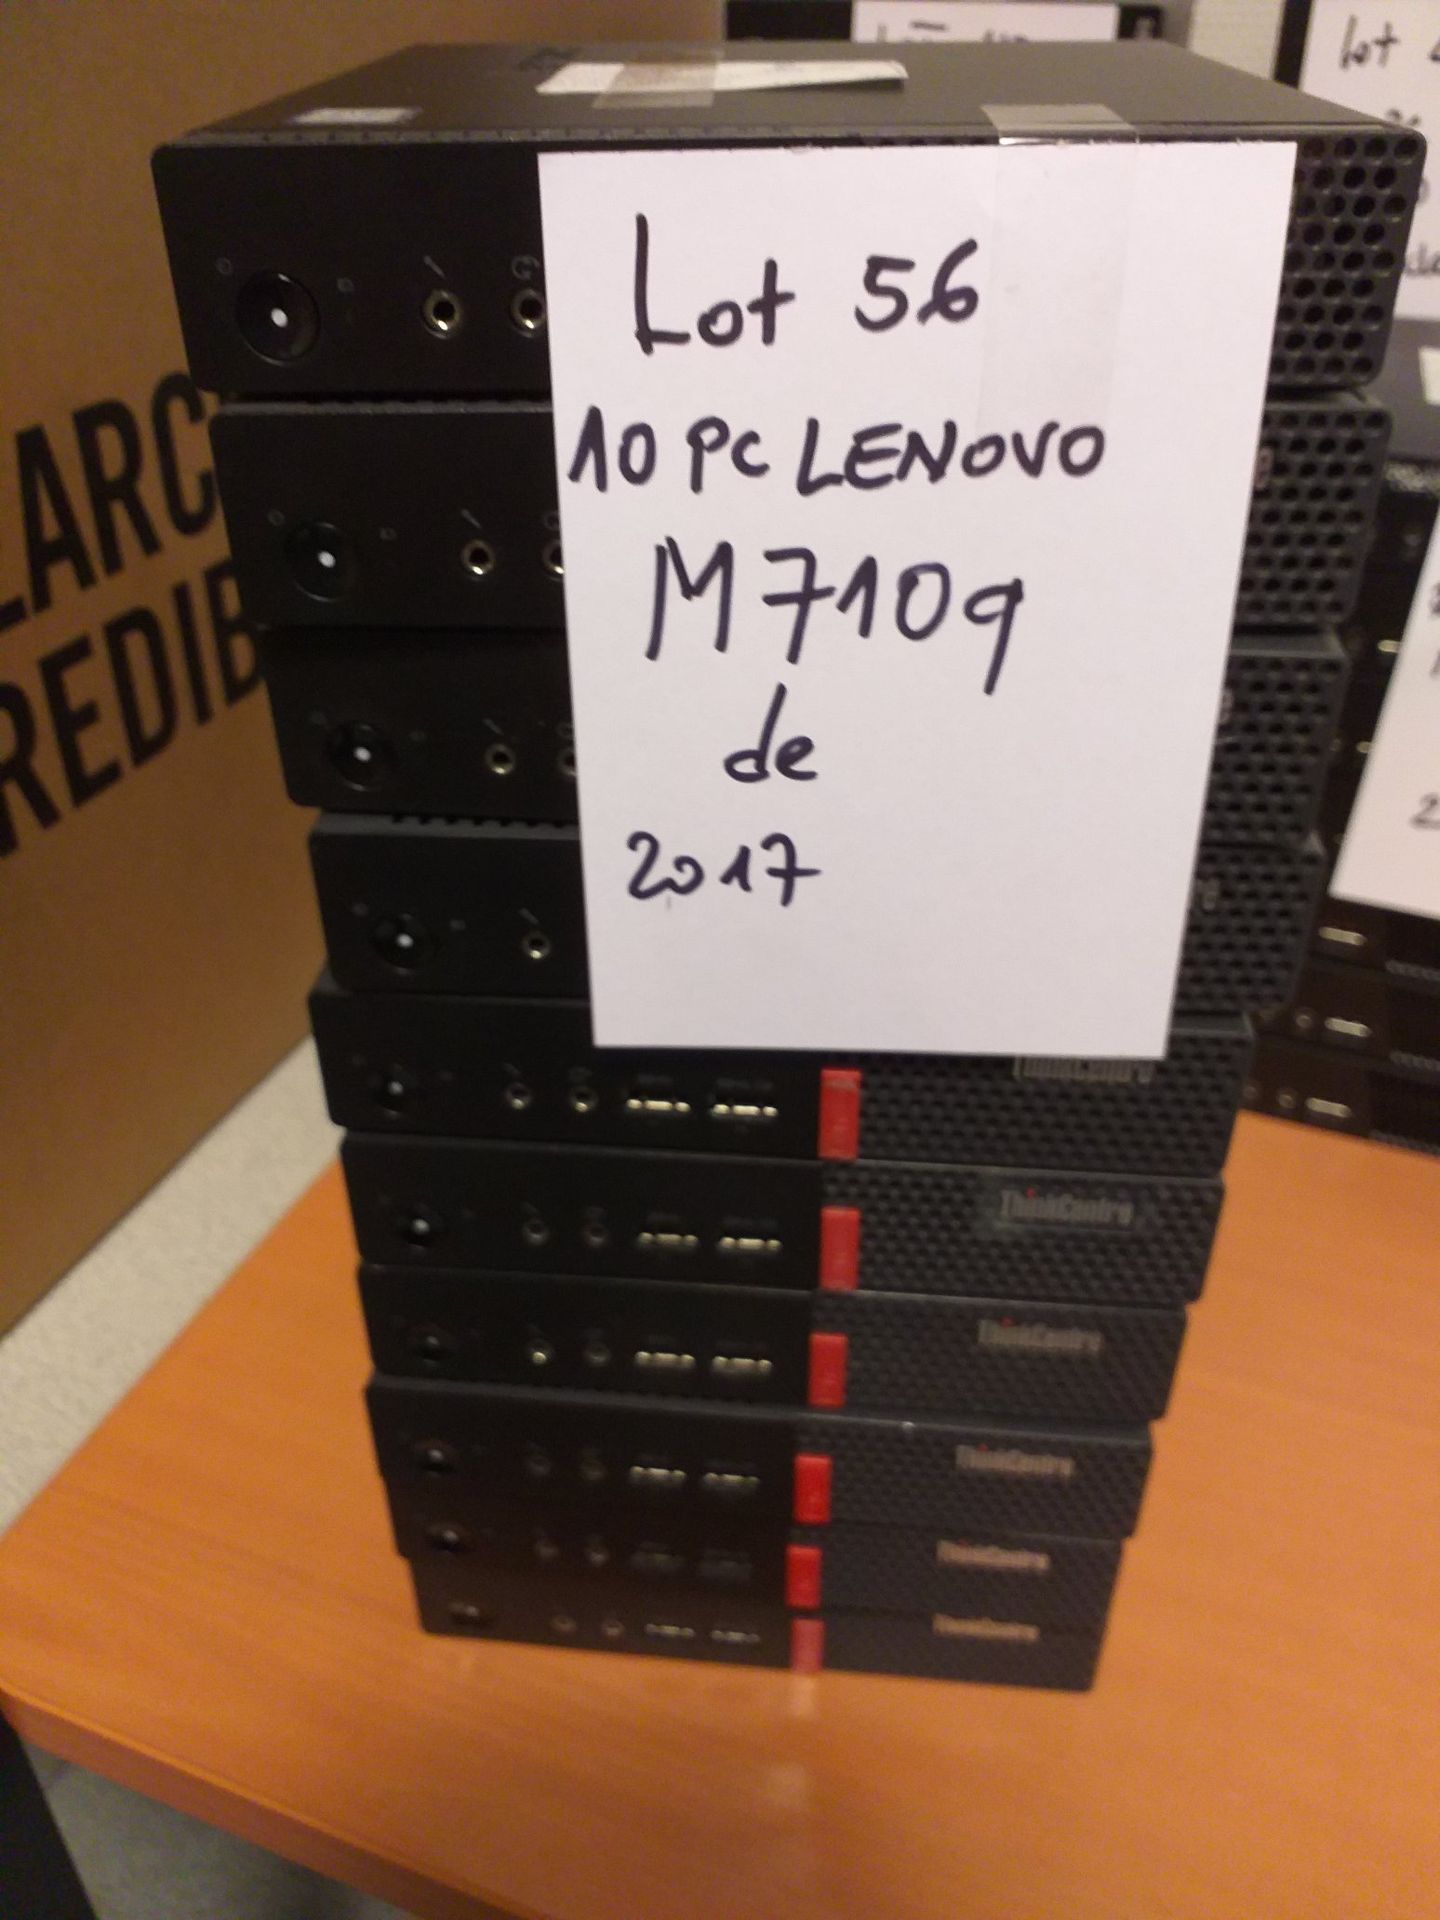 Null Lot de 10 PC de marque Lenovo M710Q datant de 2017 (n° 56).
Sans clavier, s&hellip;